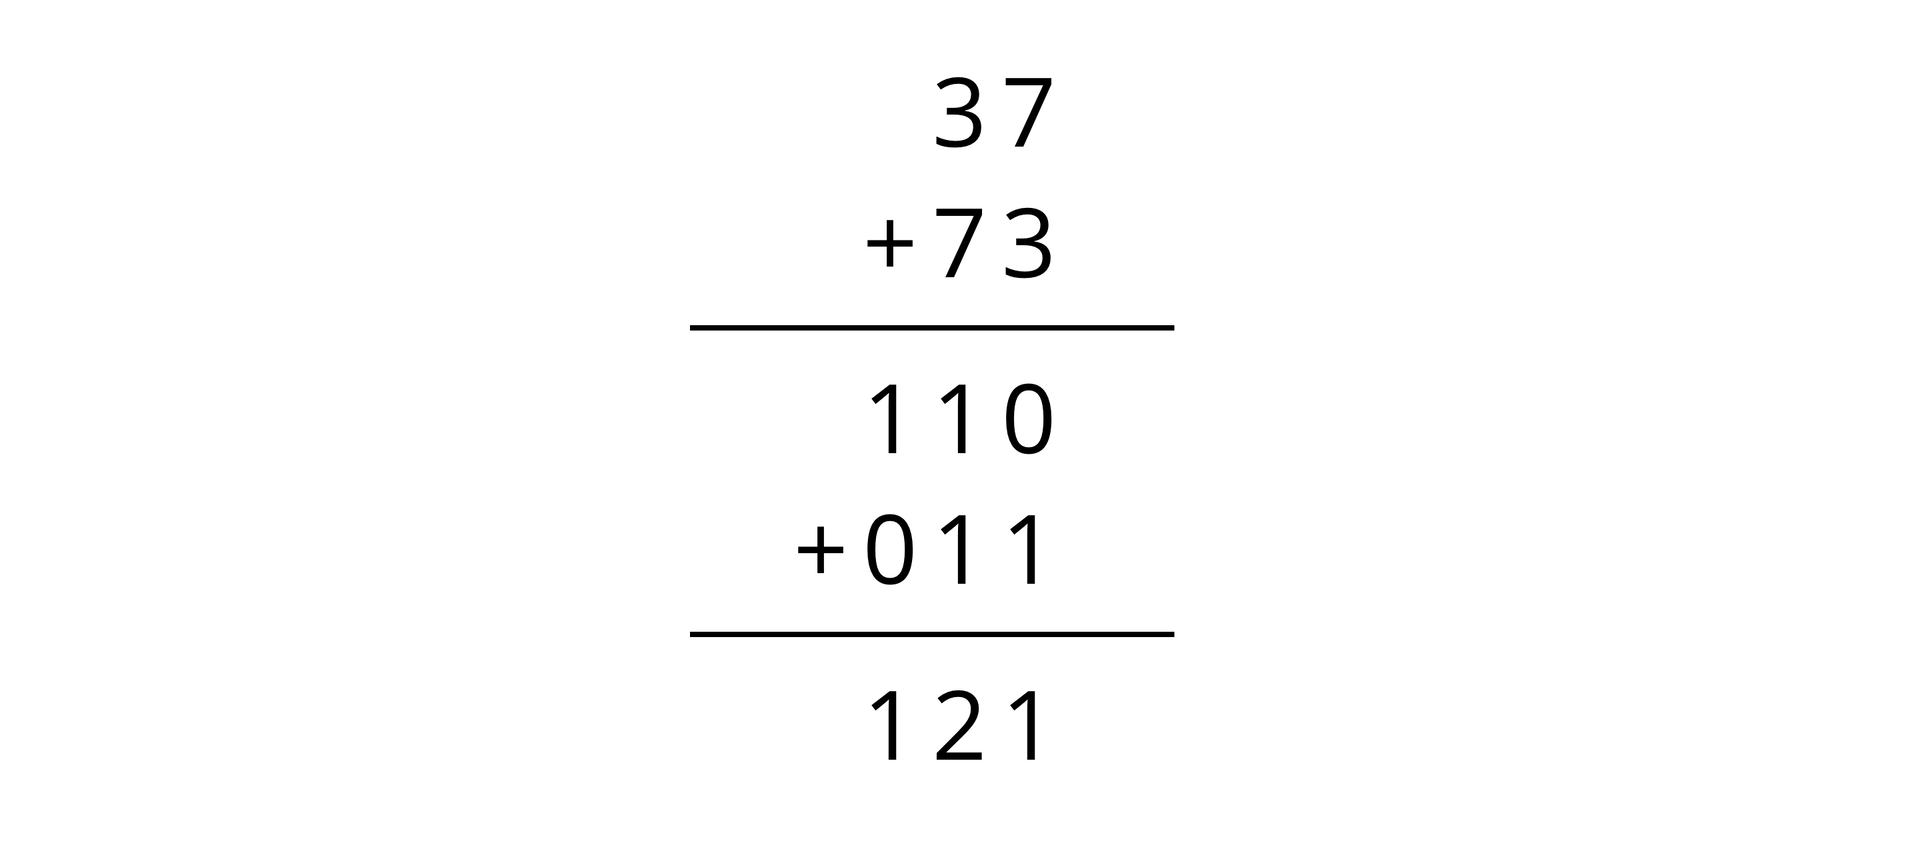 Dodawanie pisemne. Wiersz pierwszy: 37, wiersz drugi: dodać 73, kreska pozioma, w wierszu trzecim zapisano wynik dodawania, czyli liczbę 110, do której dodano kolejny składnik. Wiersz czwarty: dodać 011. Kreska pozioma. Wiersz piąty zawiera wynik drugiego dodawania: 121